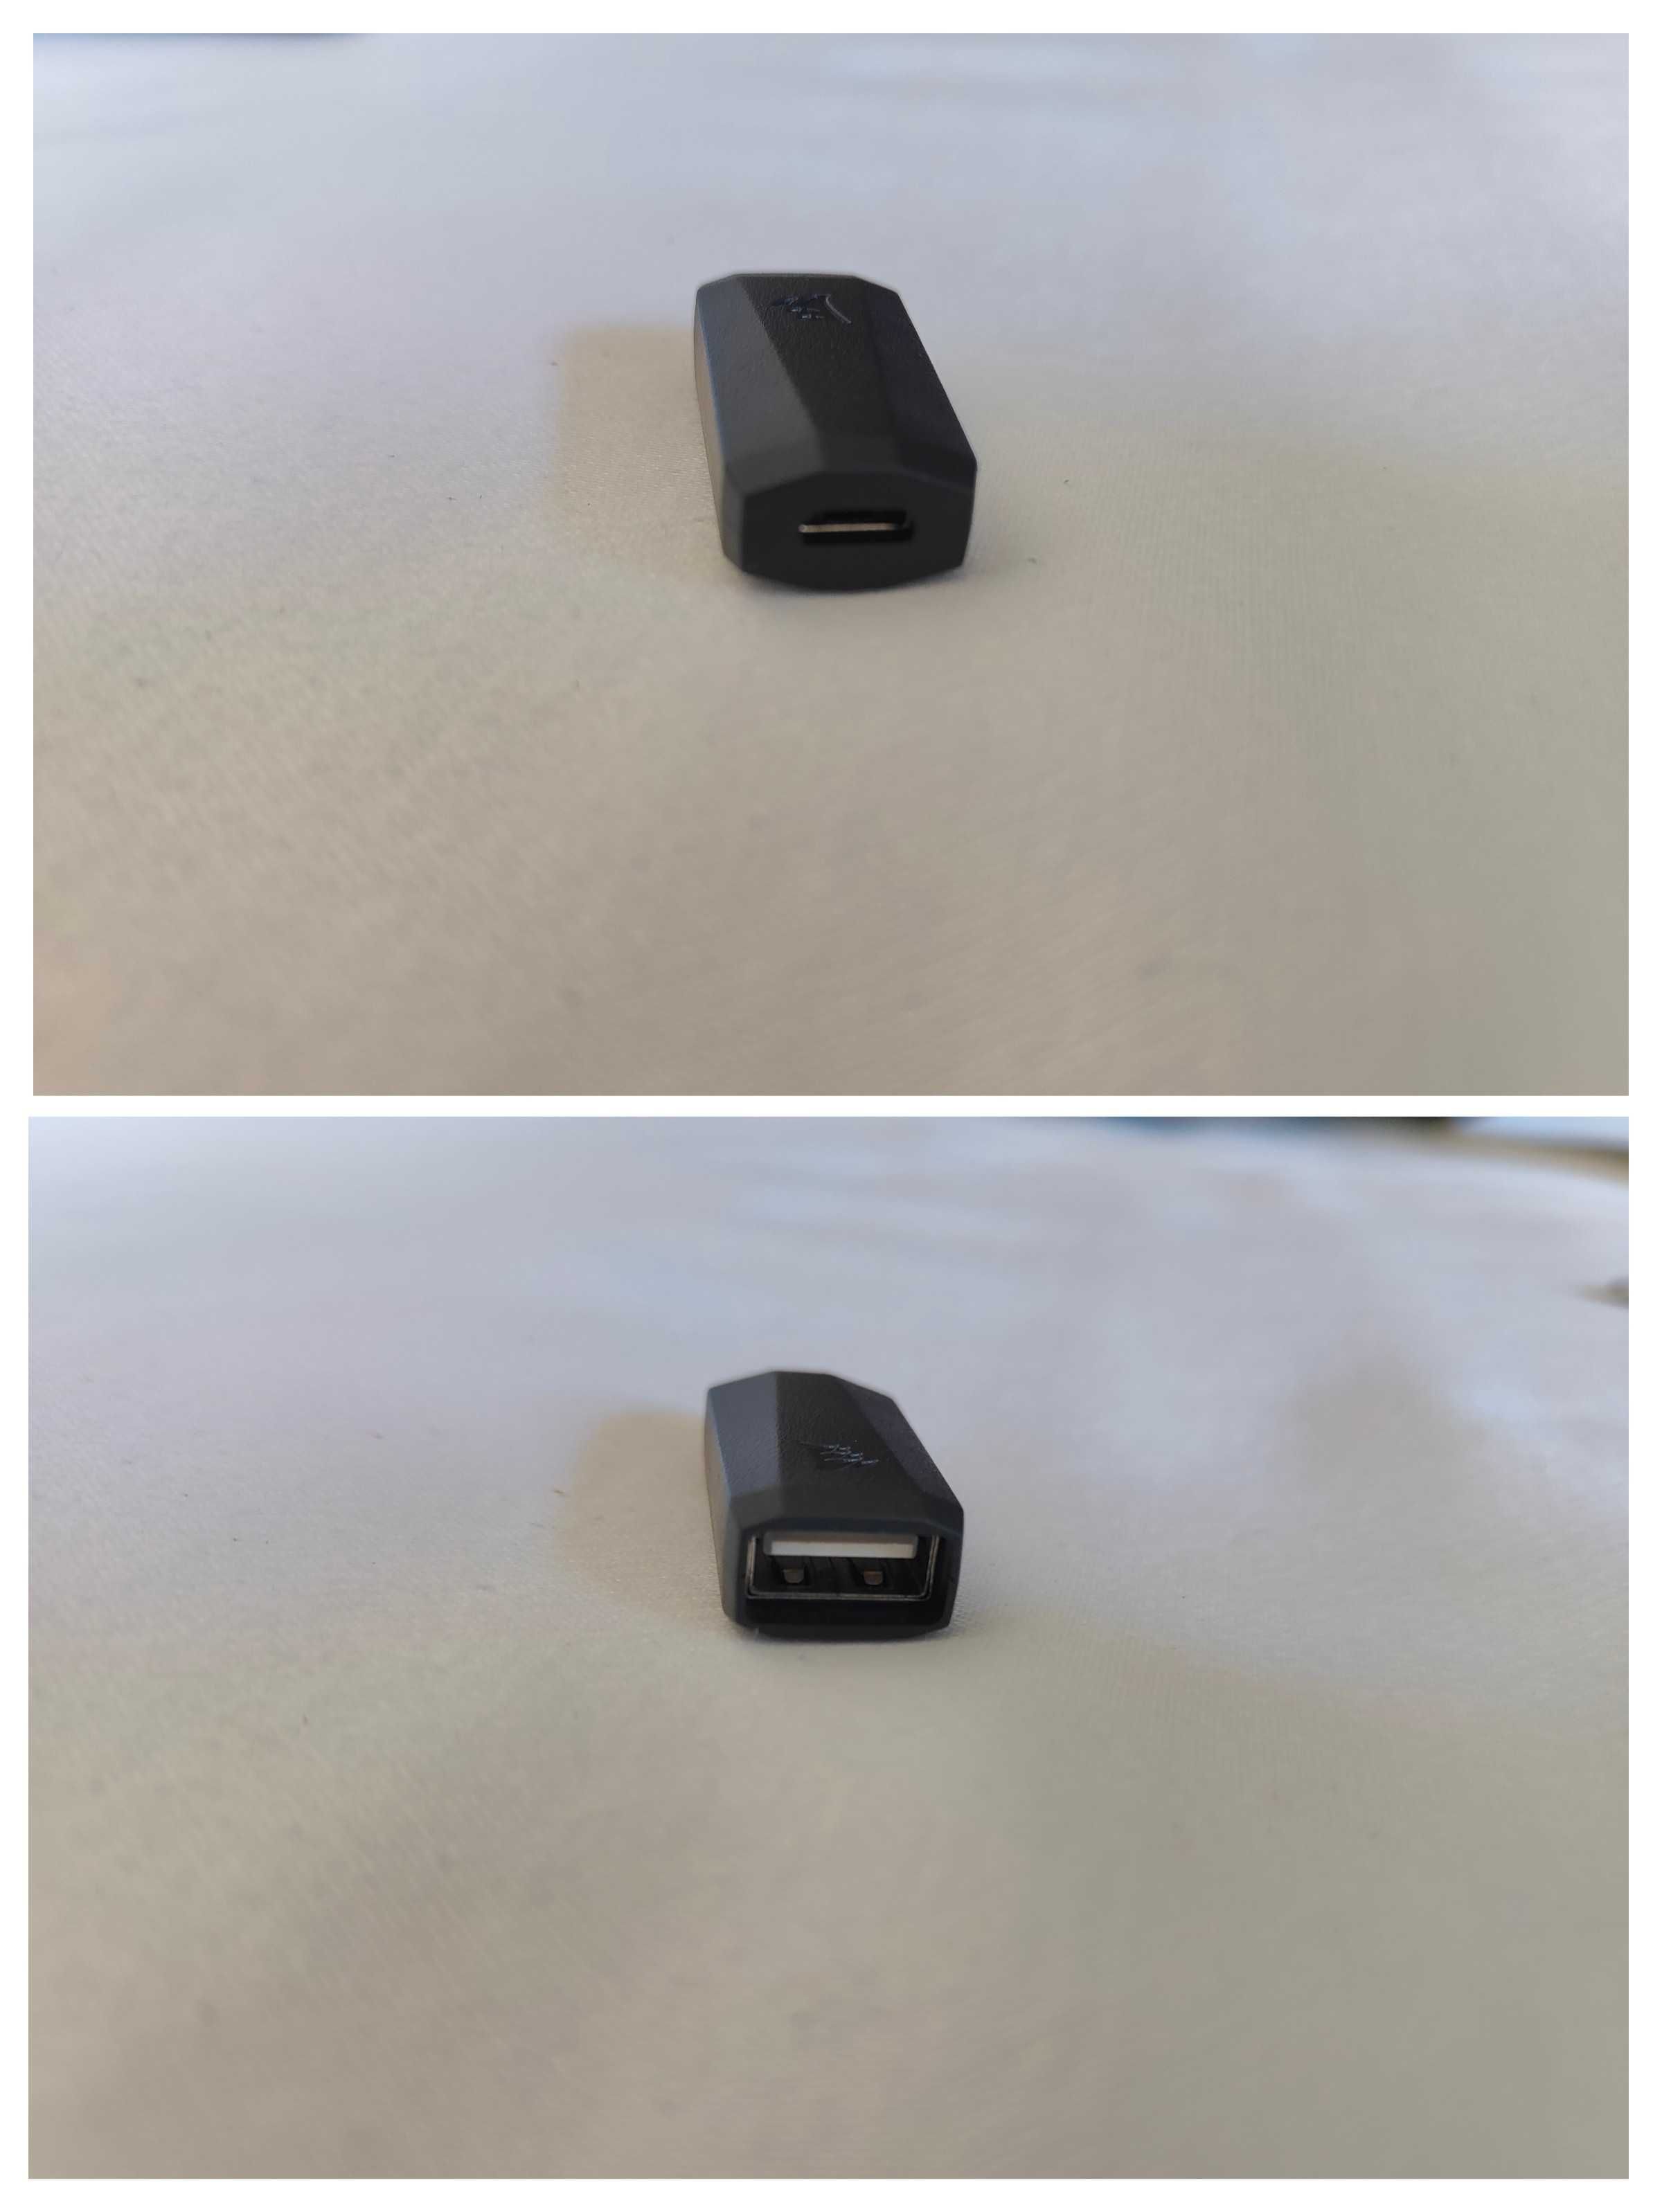 Rato Corsair Dark Core RGB SE (Wireless/Wired)